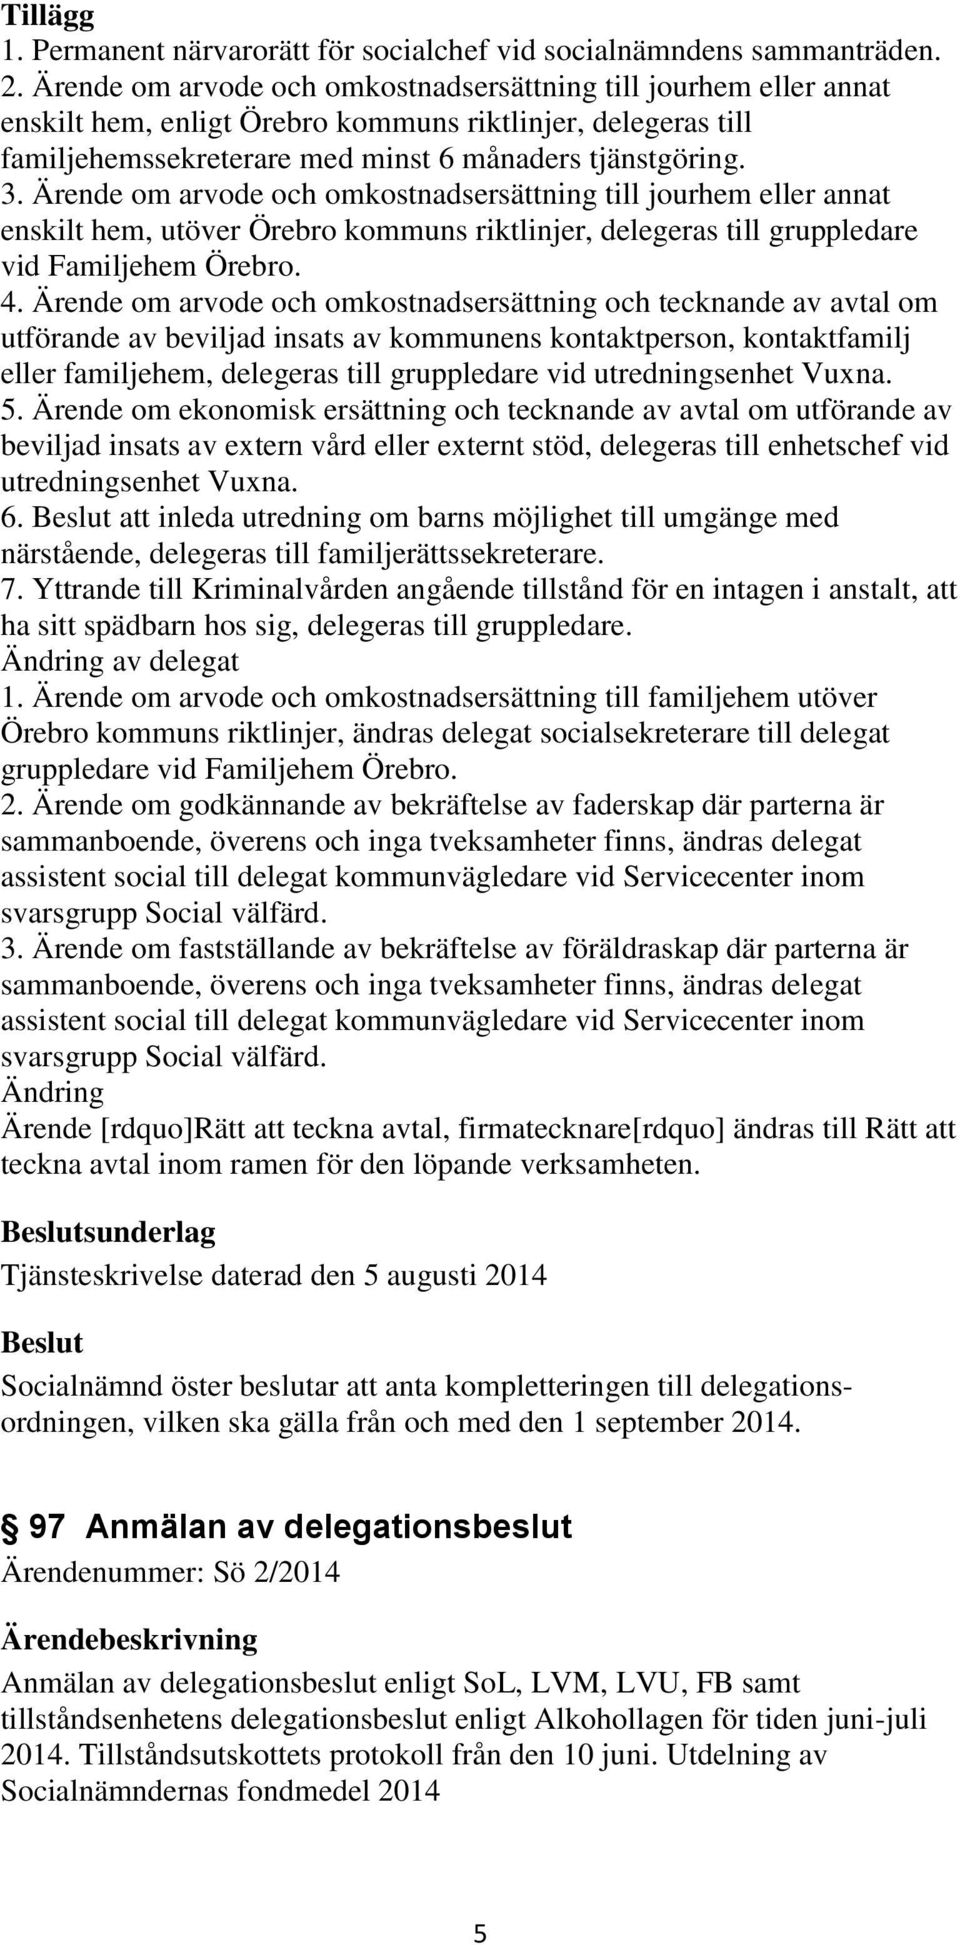 Ärende om arvode och omkostnadsersättning till jourhem eller annat enskilt hem, utöver Örebro kommuns riktlinjer, delegeras till gruppledare vid Familjehem Örebro. 4.